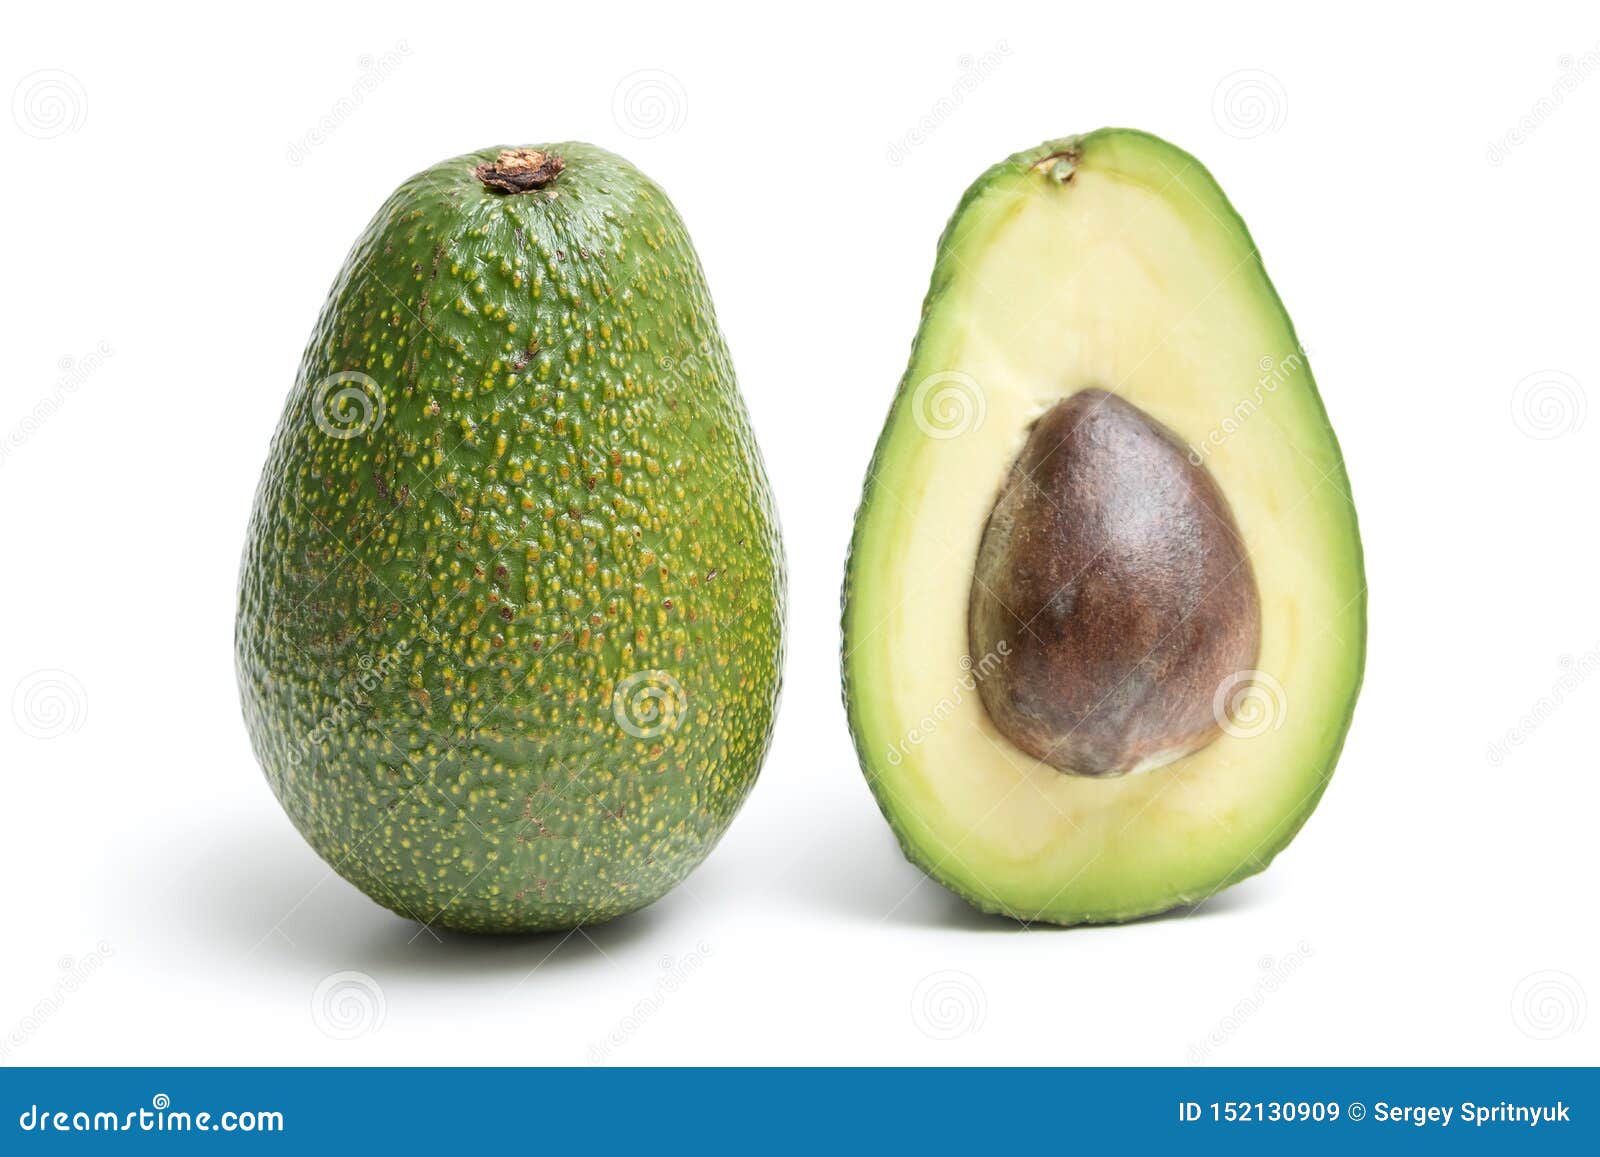 avocado  on a white background